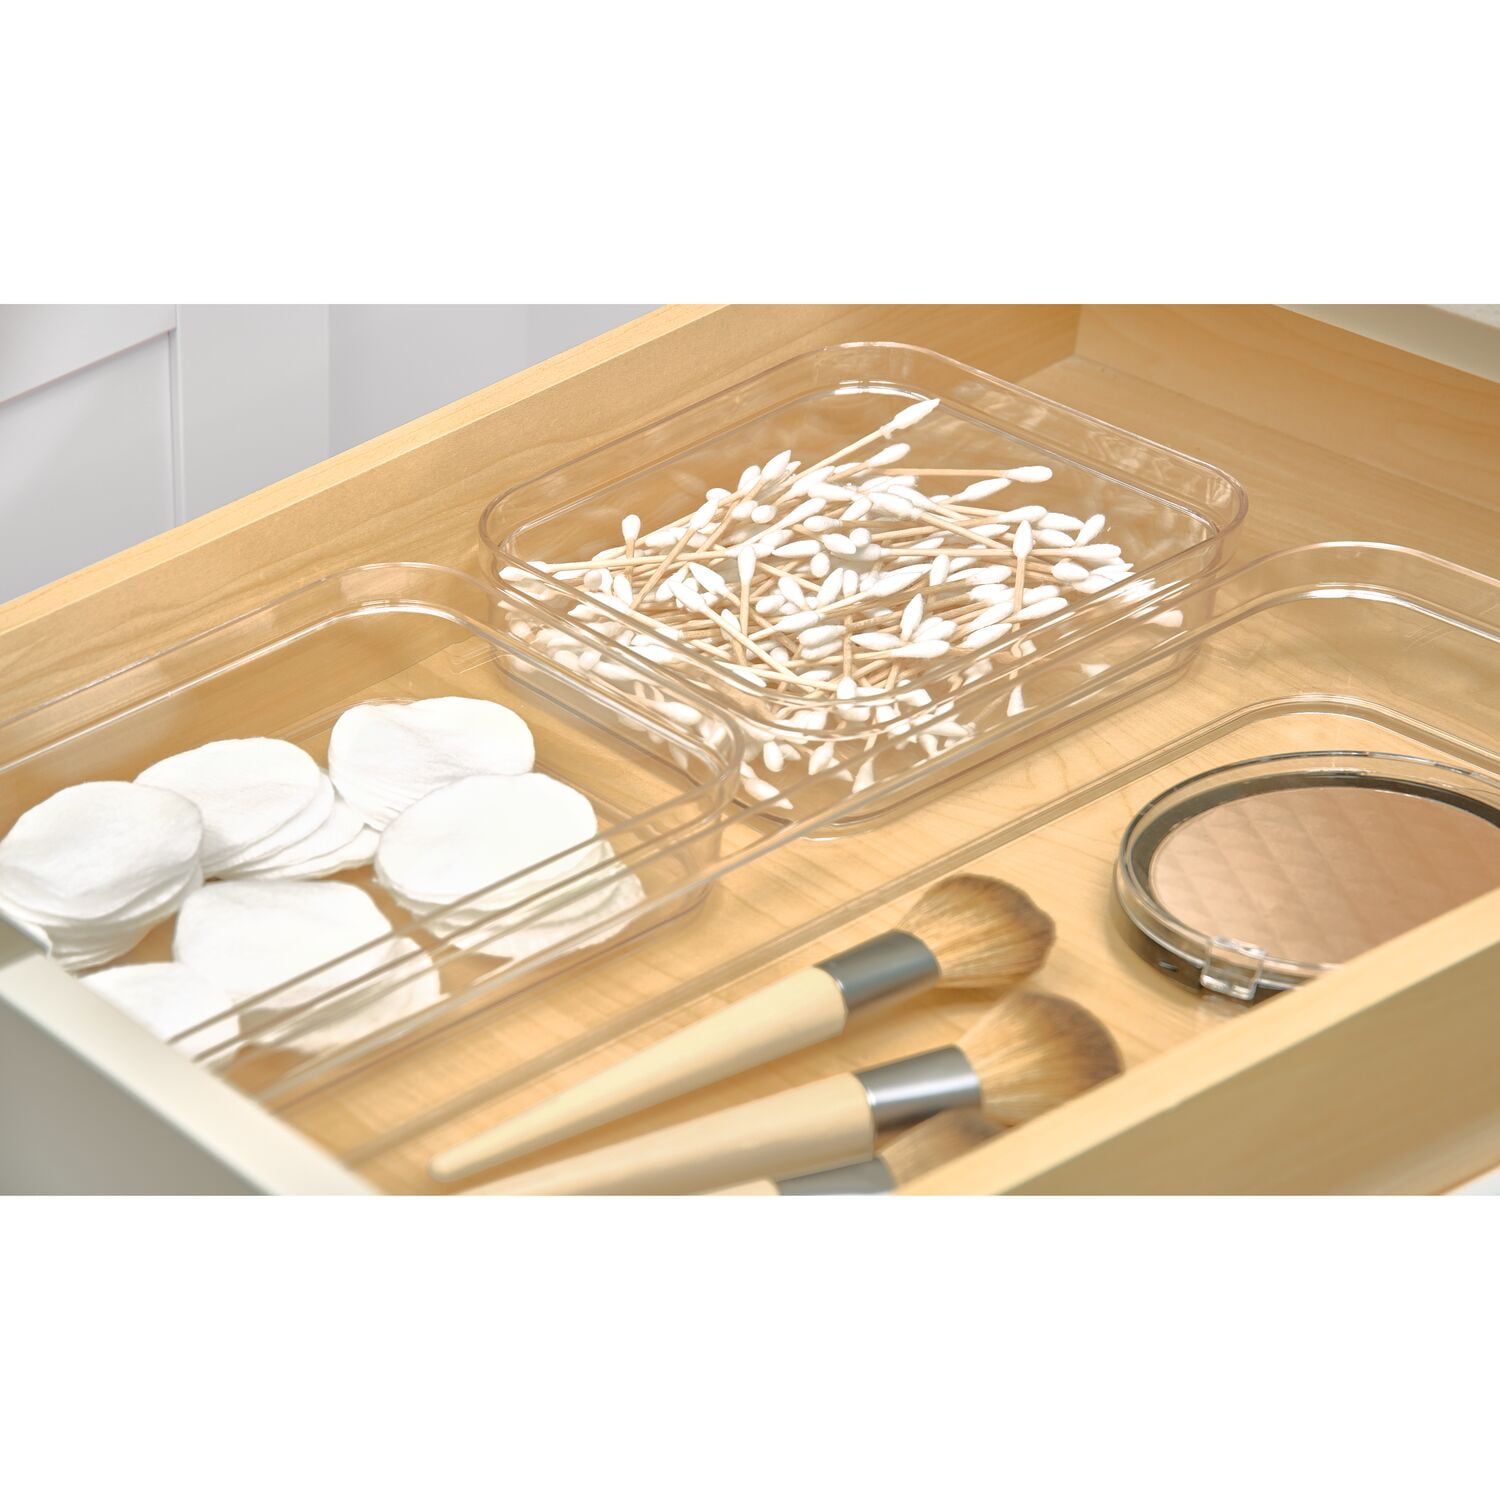 iDesign Clear Plastic Kitchen Drawer Organizer, 6 x 9 x 2 